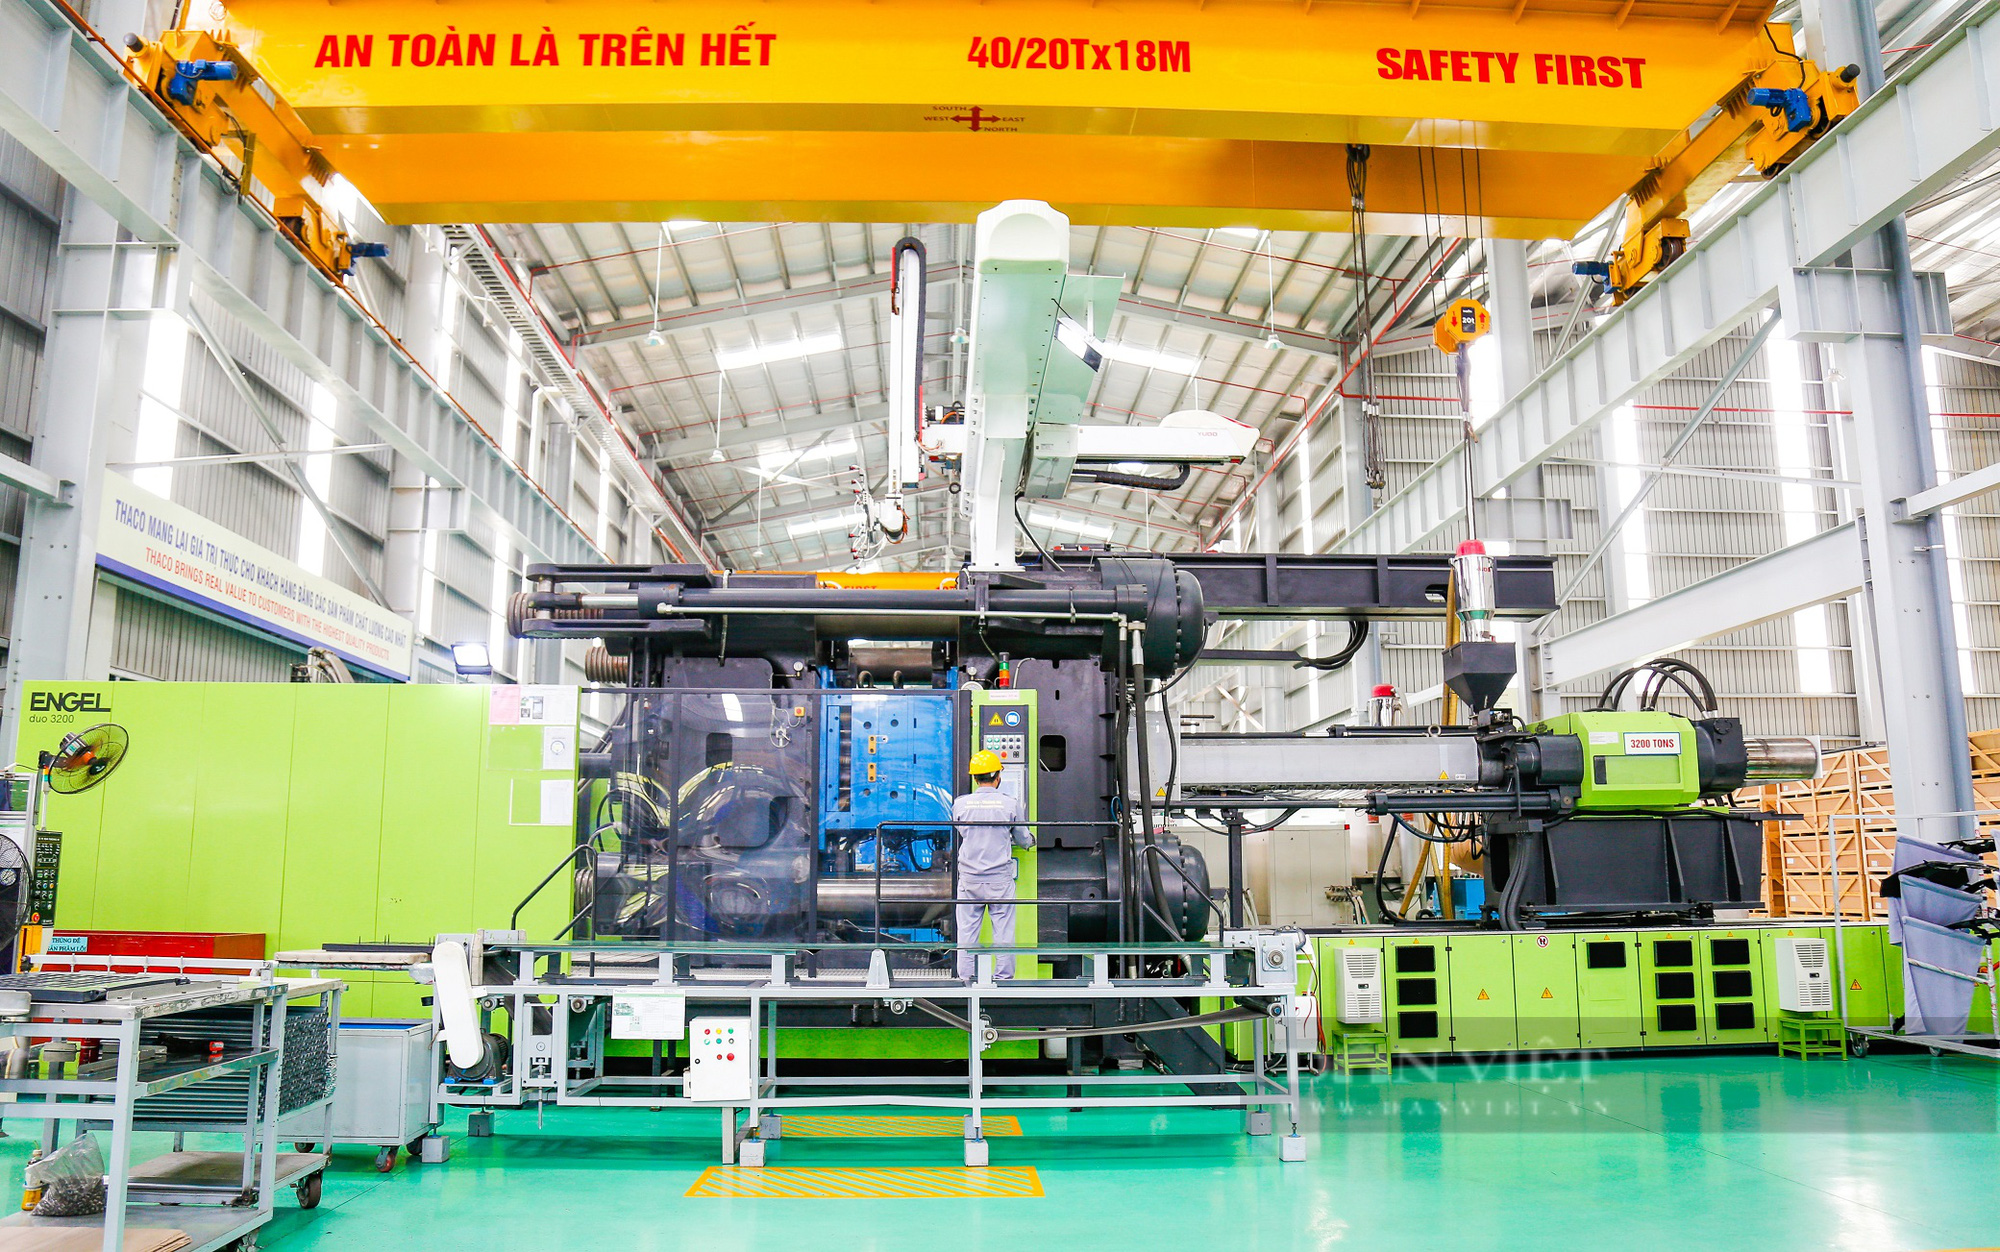 Tỷ phú Trần Bá Dương “bơm” thêm hàng nghìn tỷ đồng để phát triển công nghiệp phụ trợ ngành cơ khí ô tô - Ảnh 3.